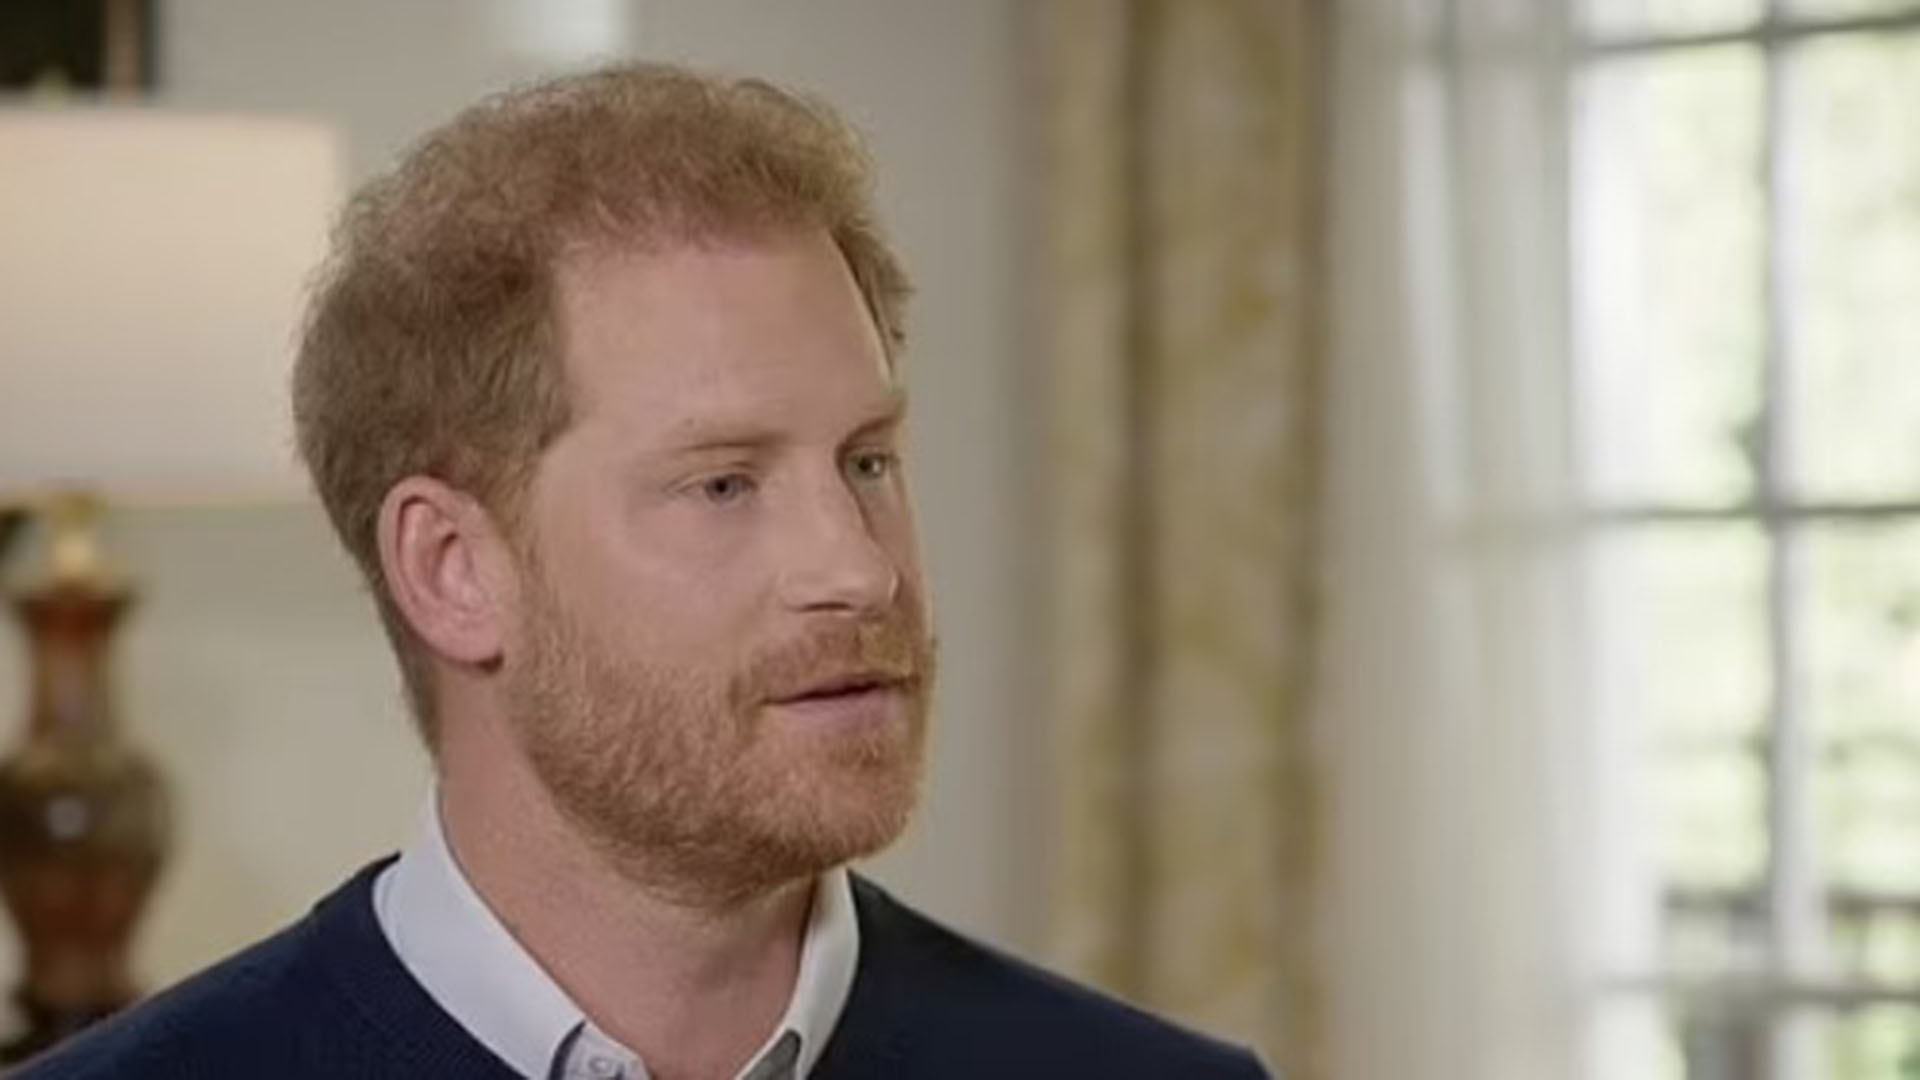 Las duras confesiones del príncipe Harry en su entrevista en la televisión británica